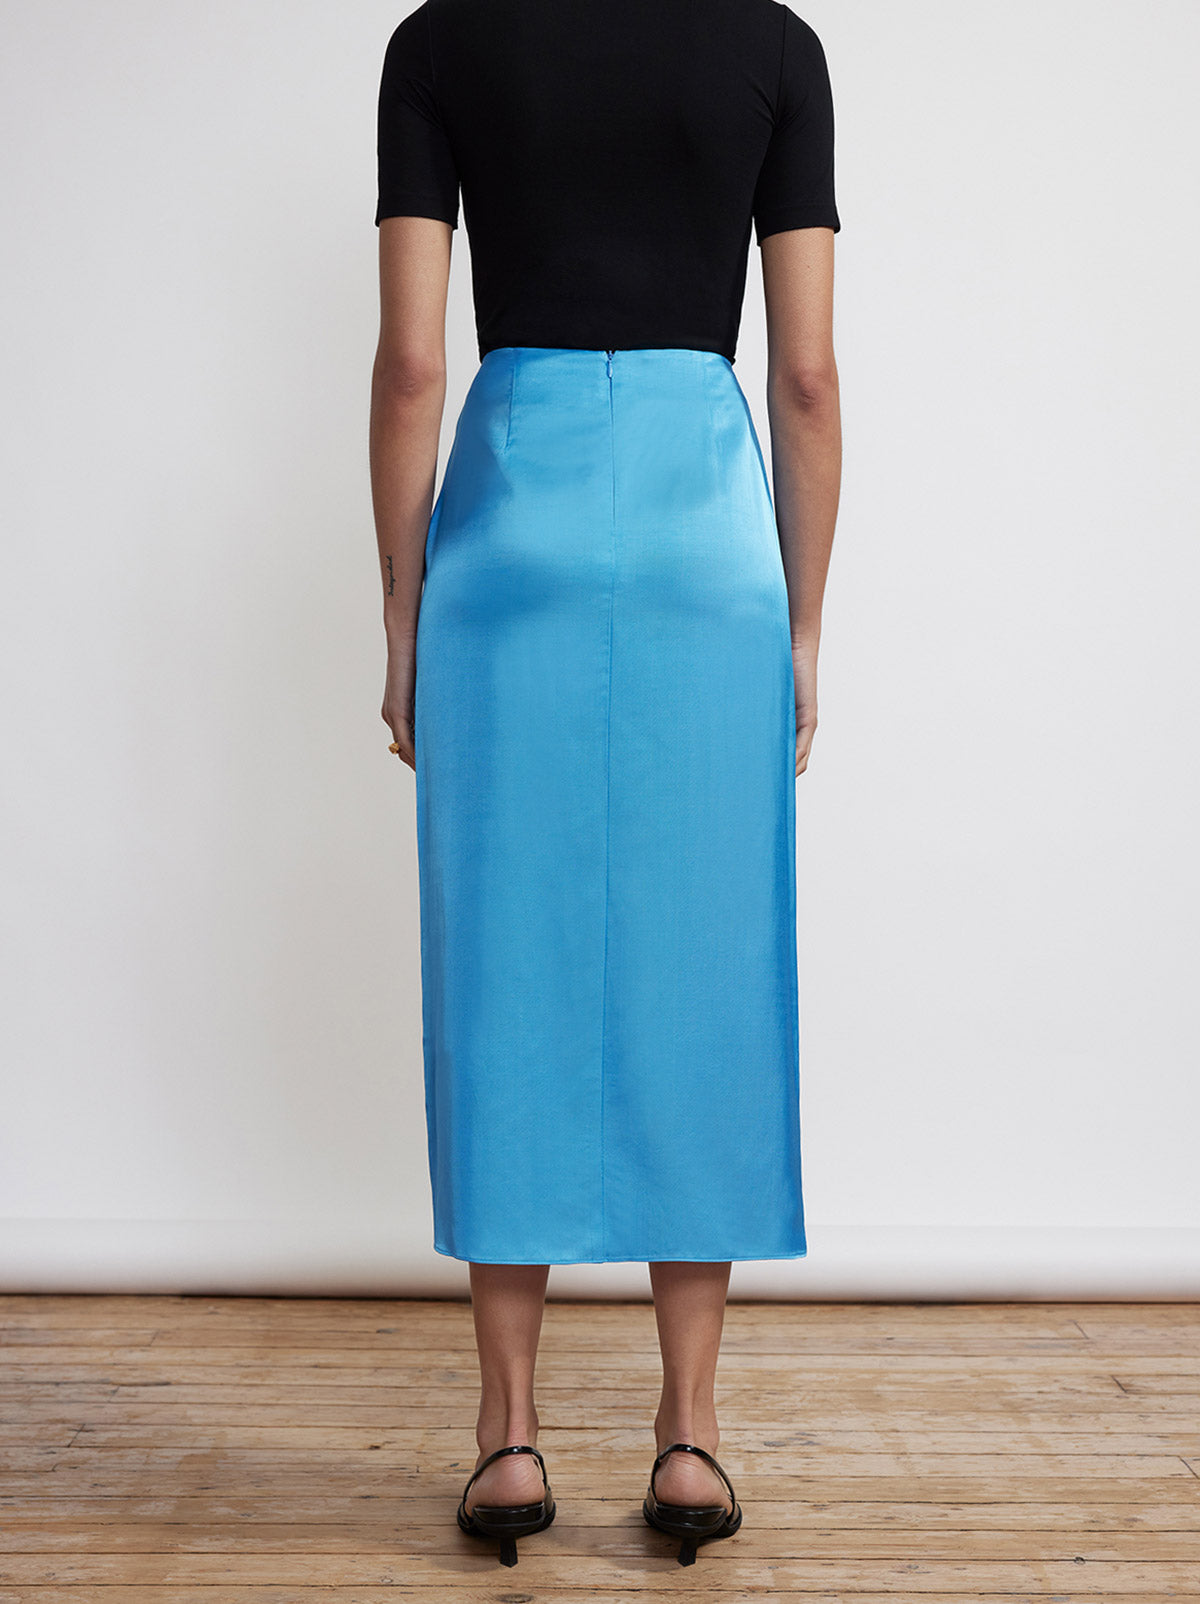 Emmeline Blue Satin Skirt by KITRI Studio